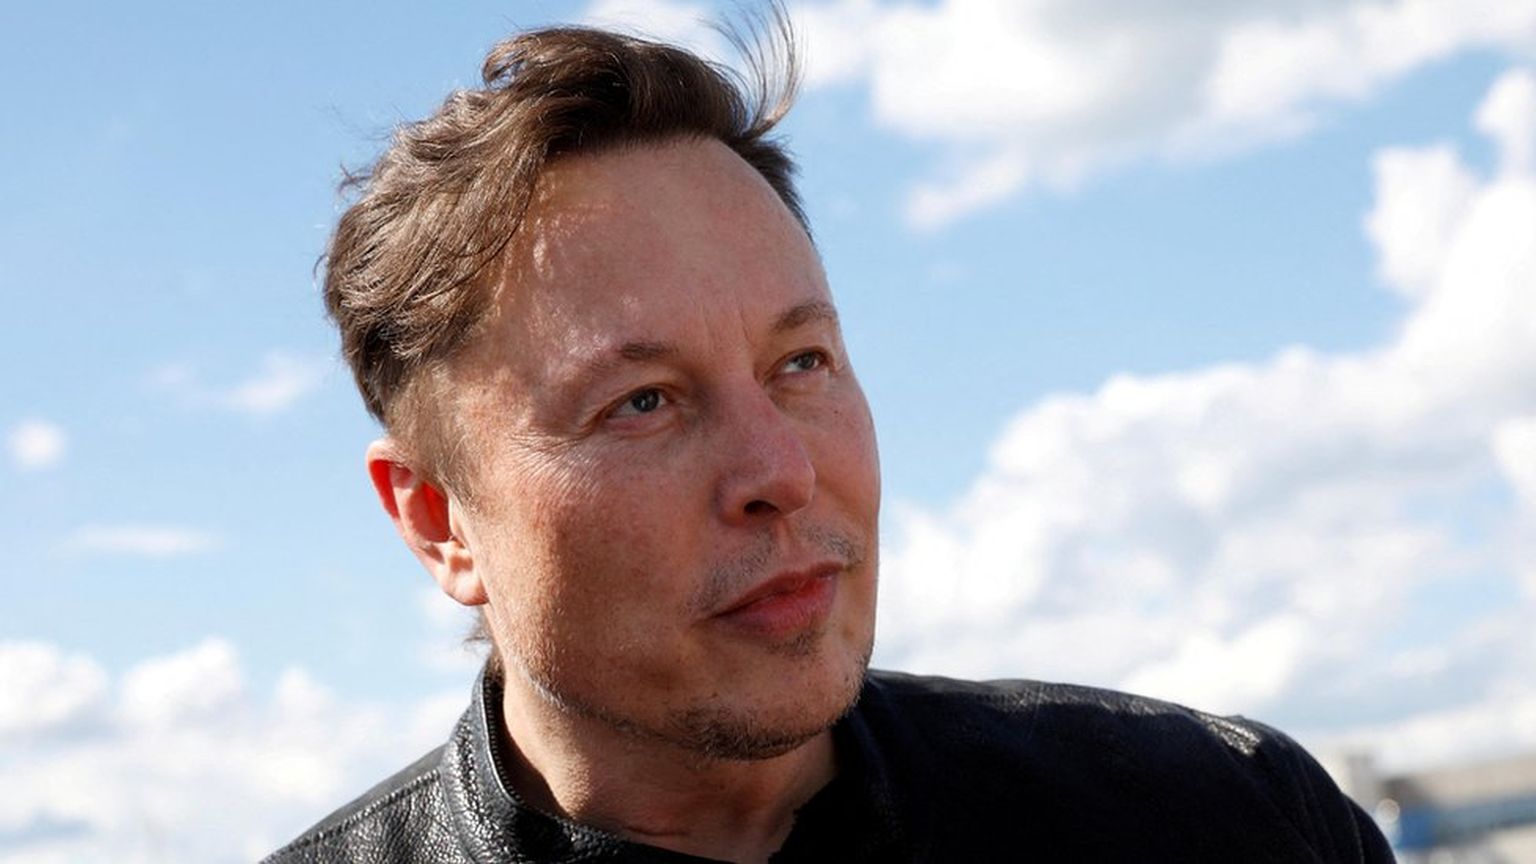 Богатейший человек в мире, основатель компаний Tesla и SpaceX Илон Маск